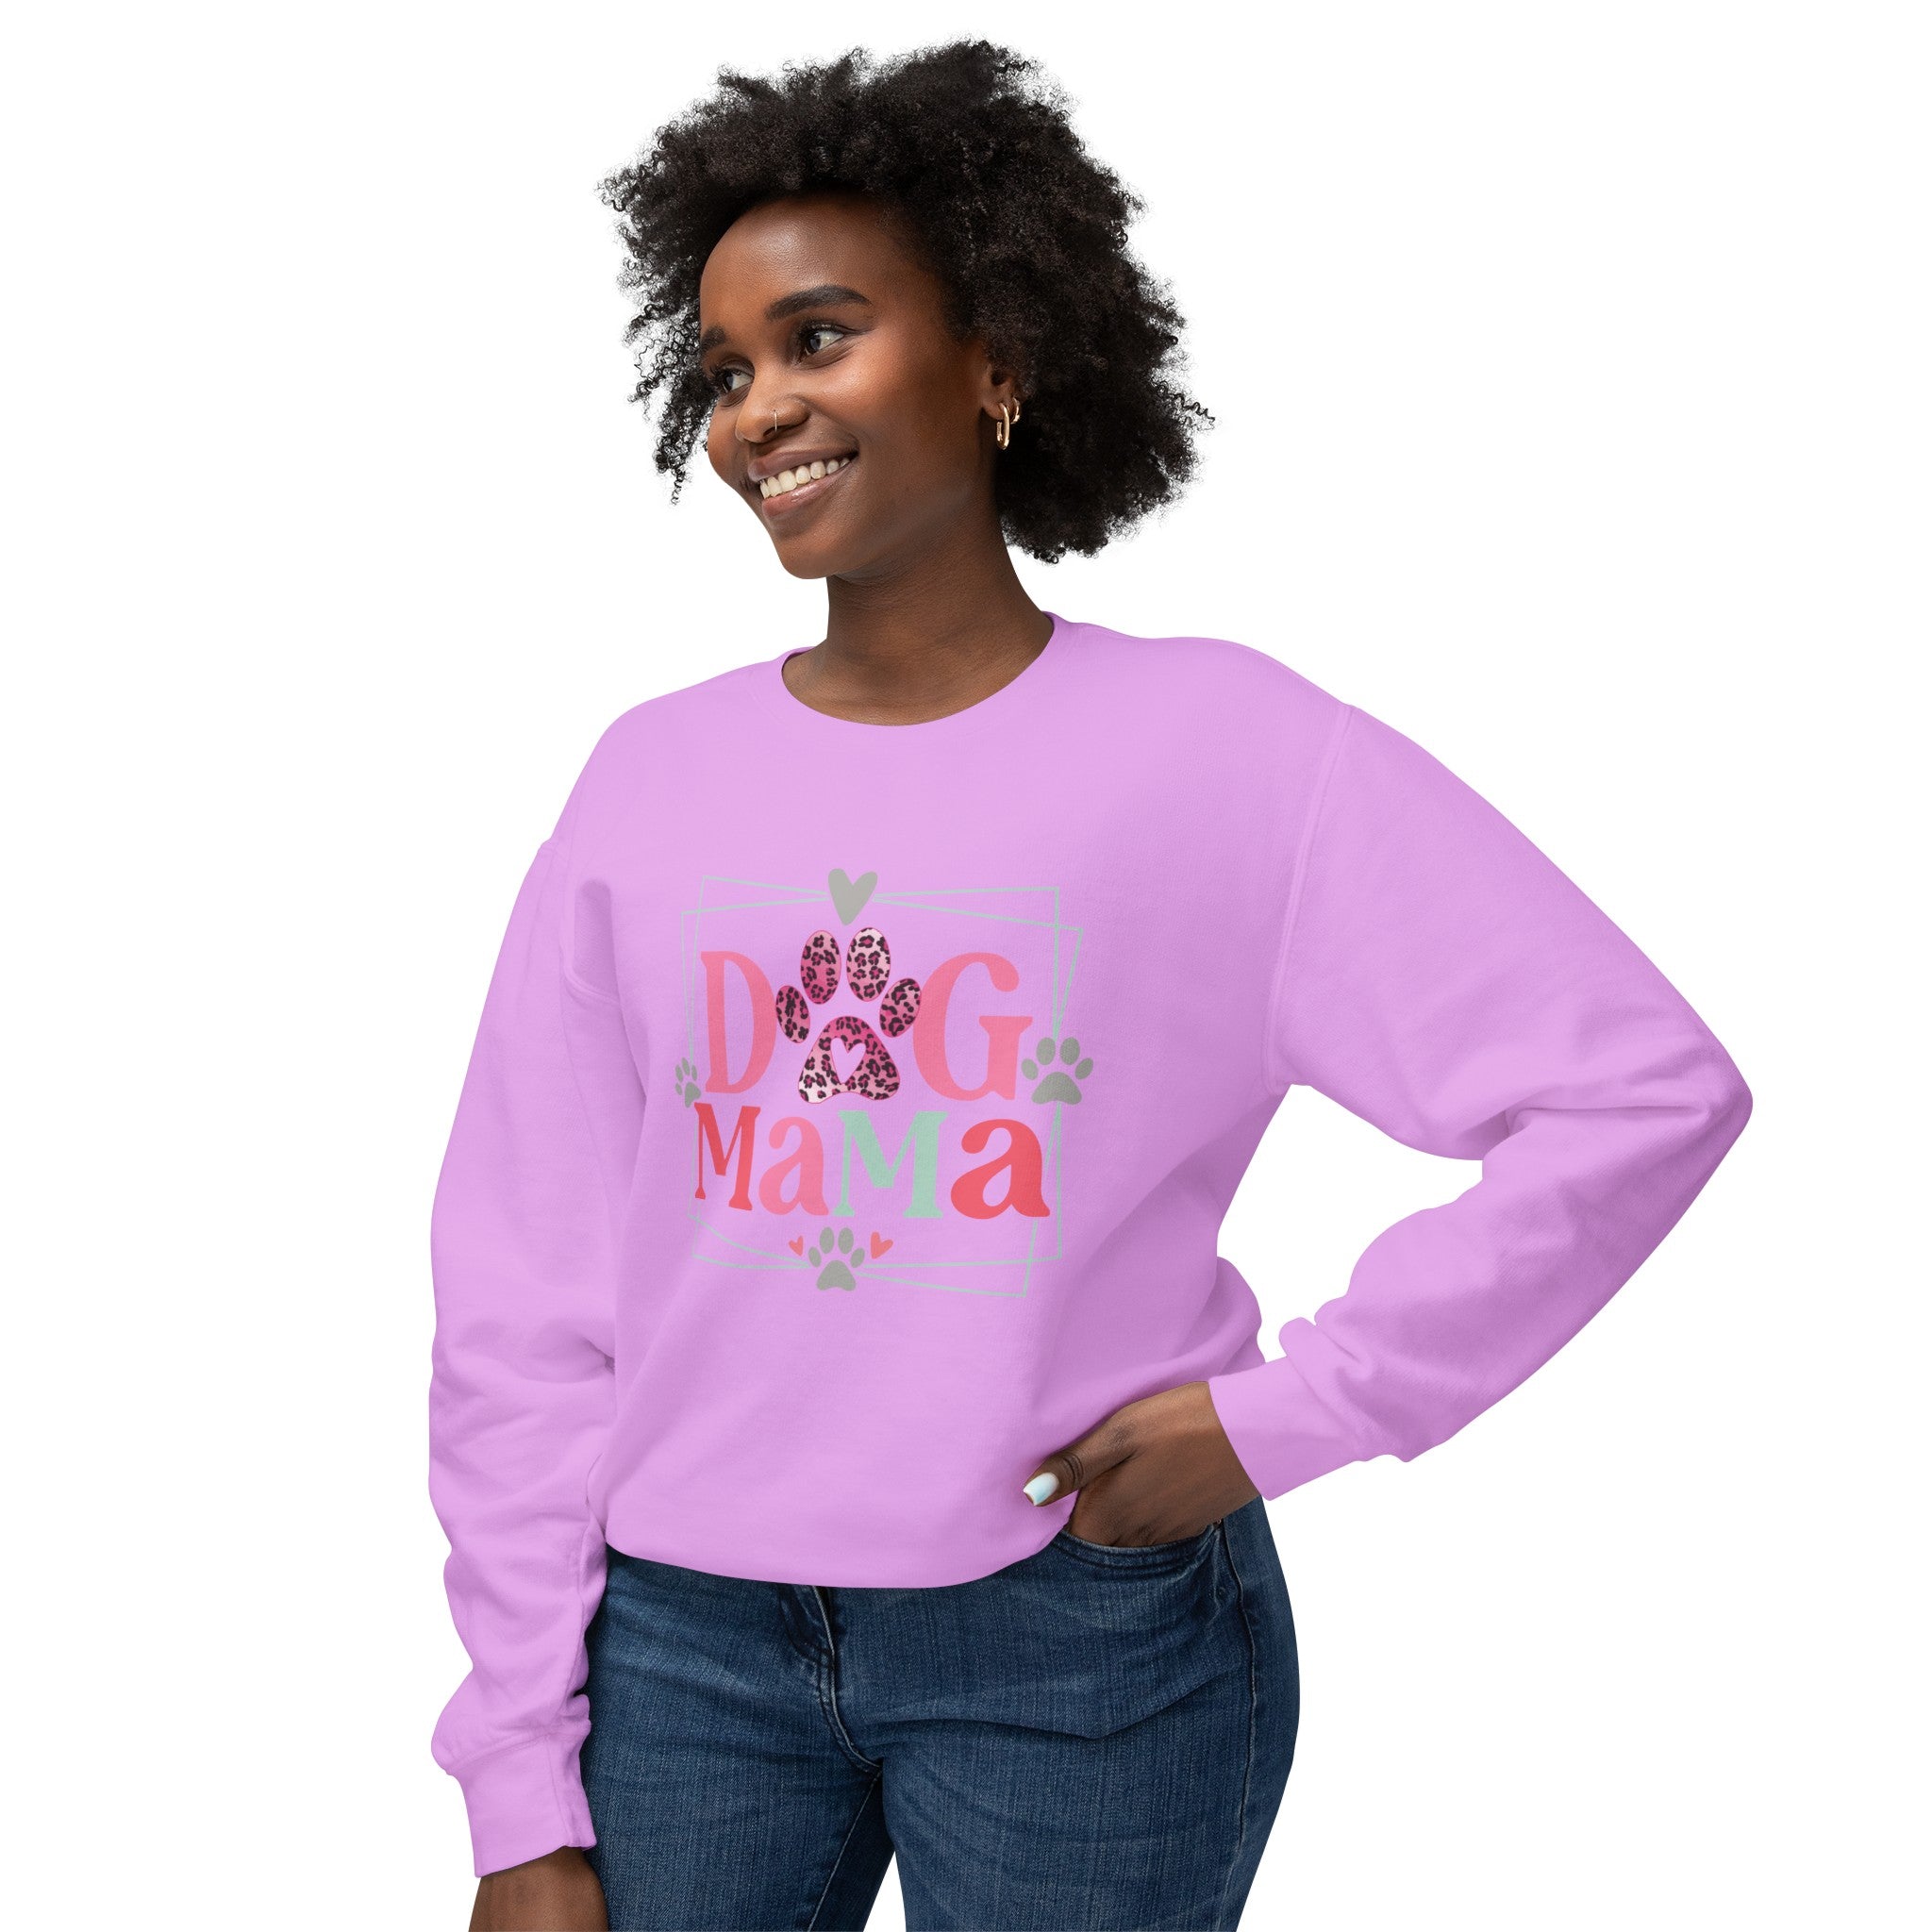 Dog Mama Lightweight Crewneck Sweatshirt